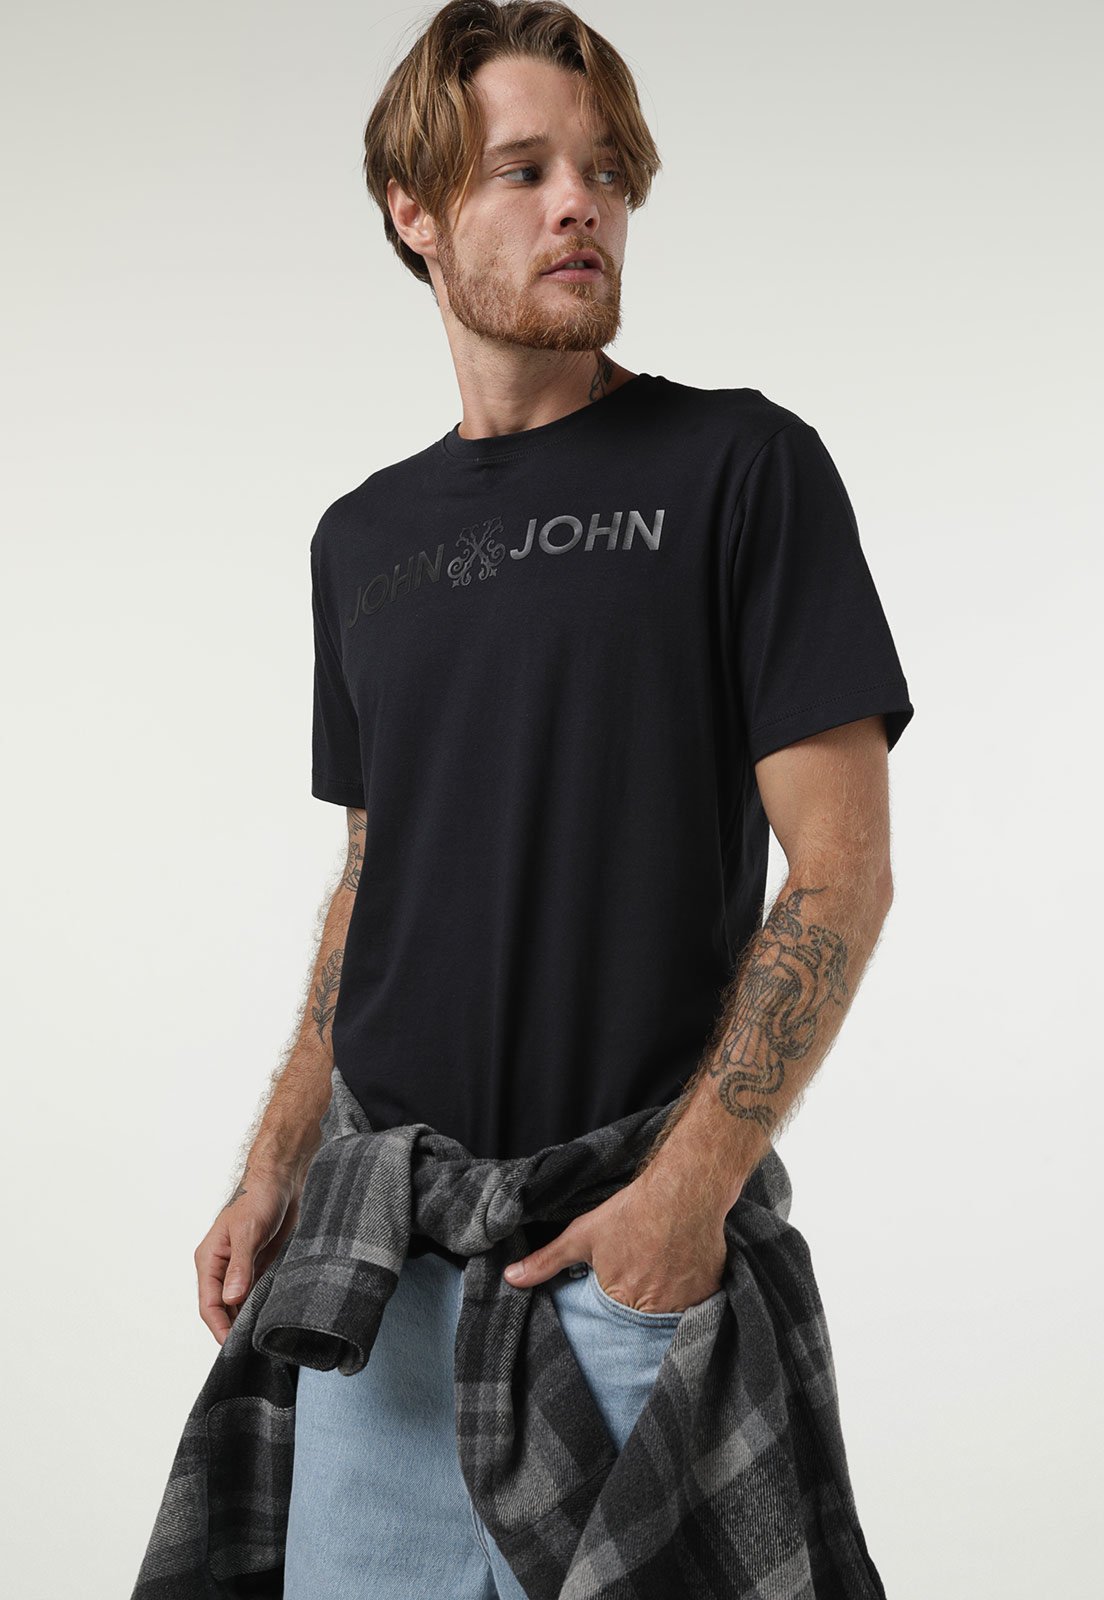 Camiseta - John John - P Camisetas